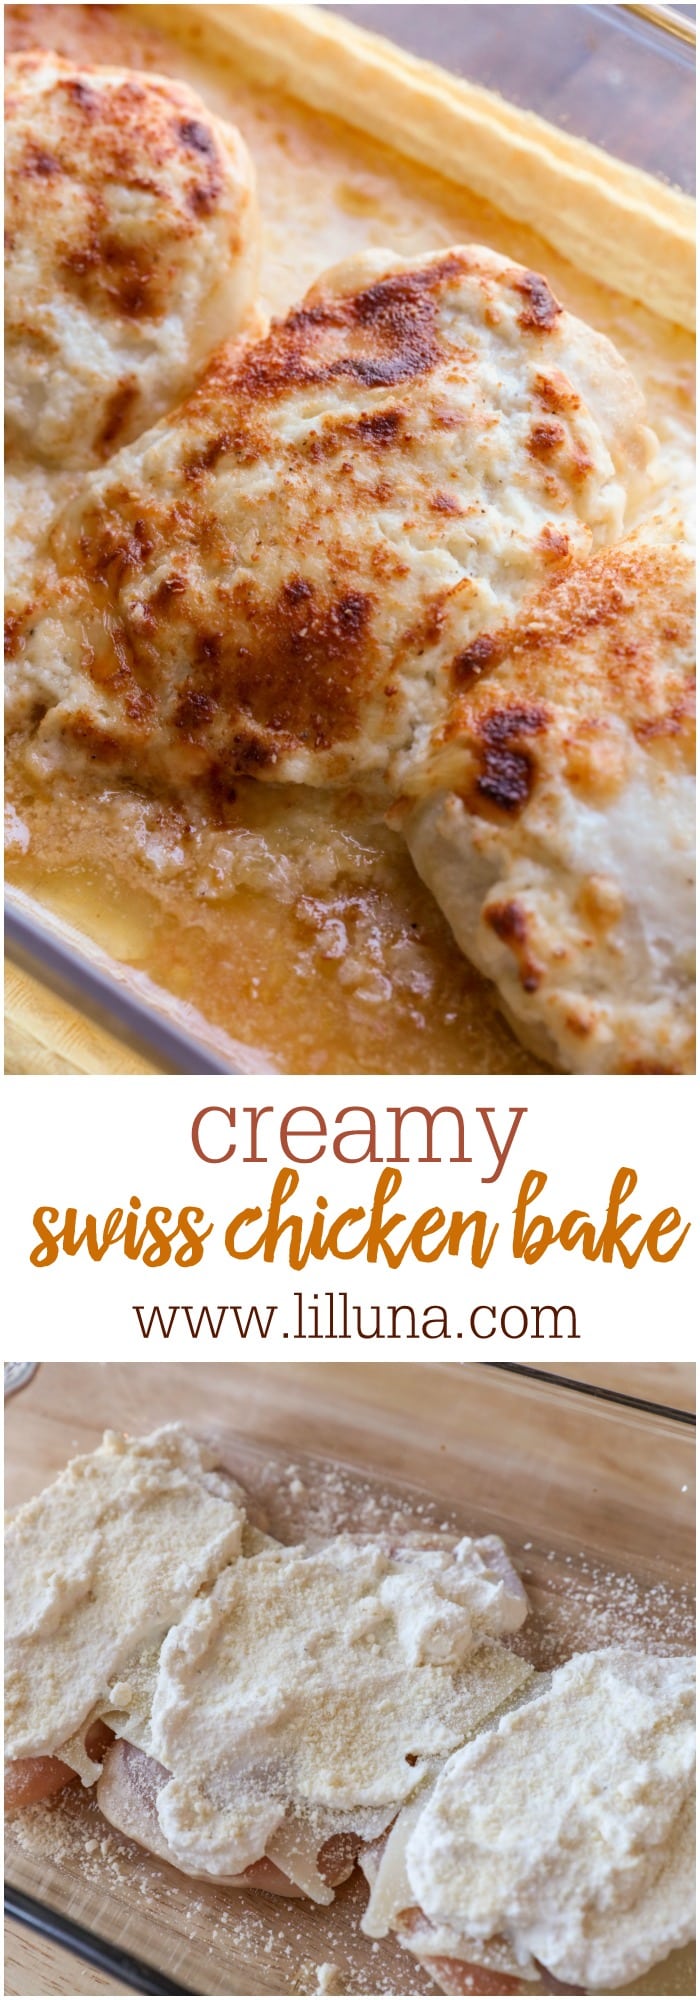 DELICIOUS Creamy Swiss Chicken Bake | Lil' Luna